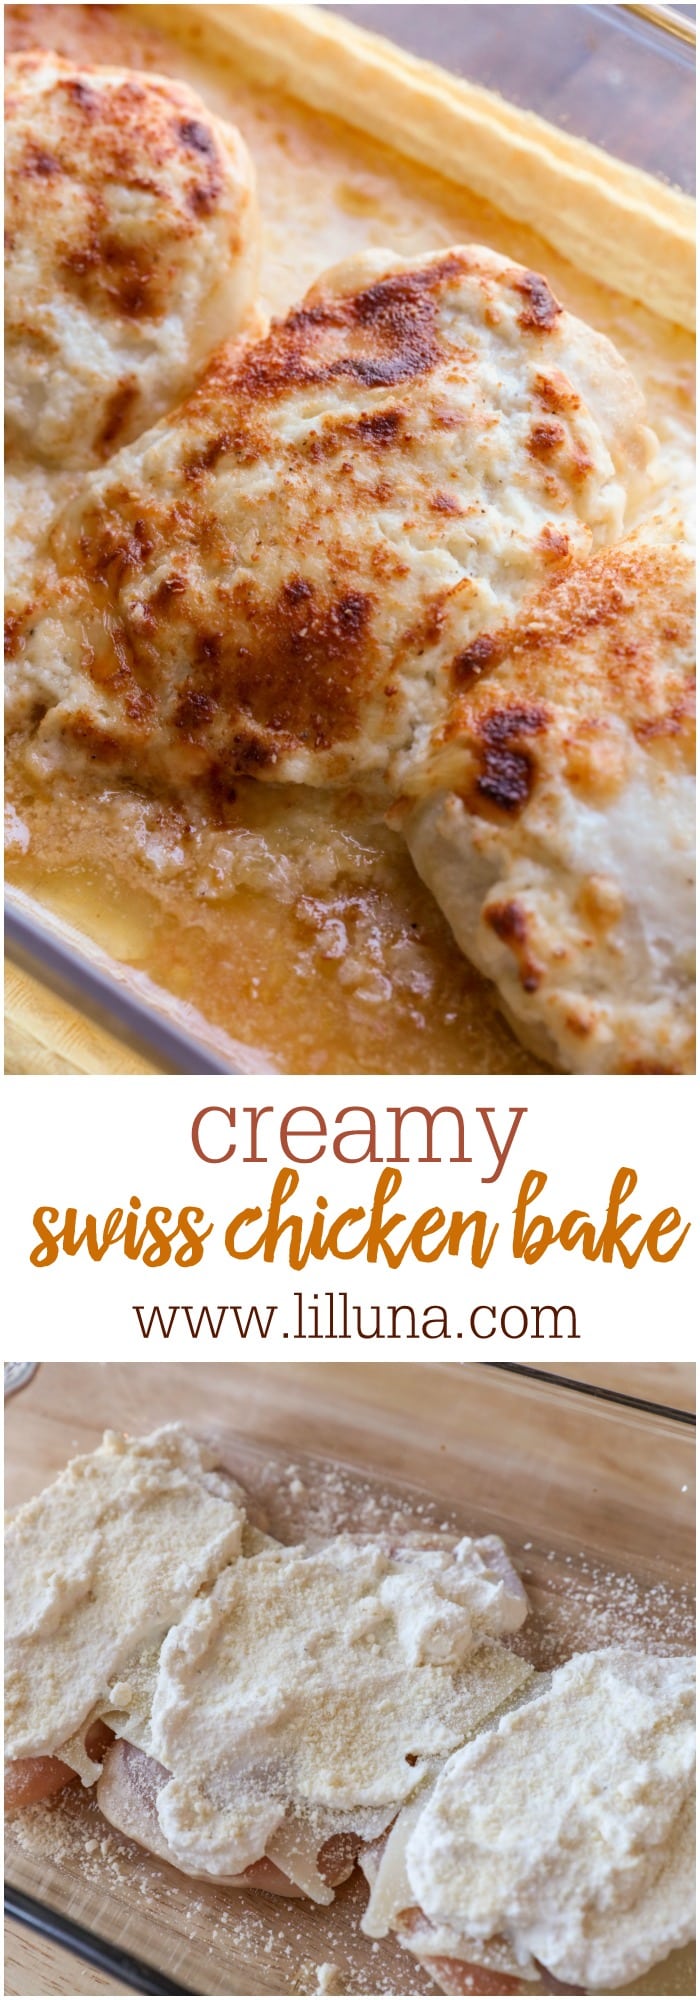 DELICIOUS Creamy Swiss Chicken Bake | Lil' Luna